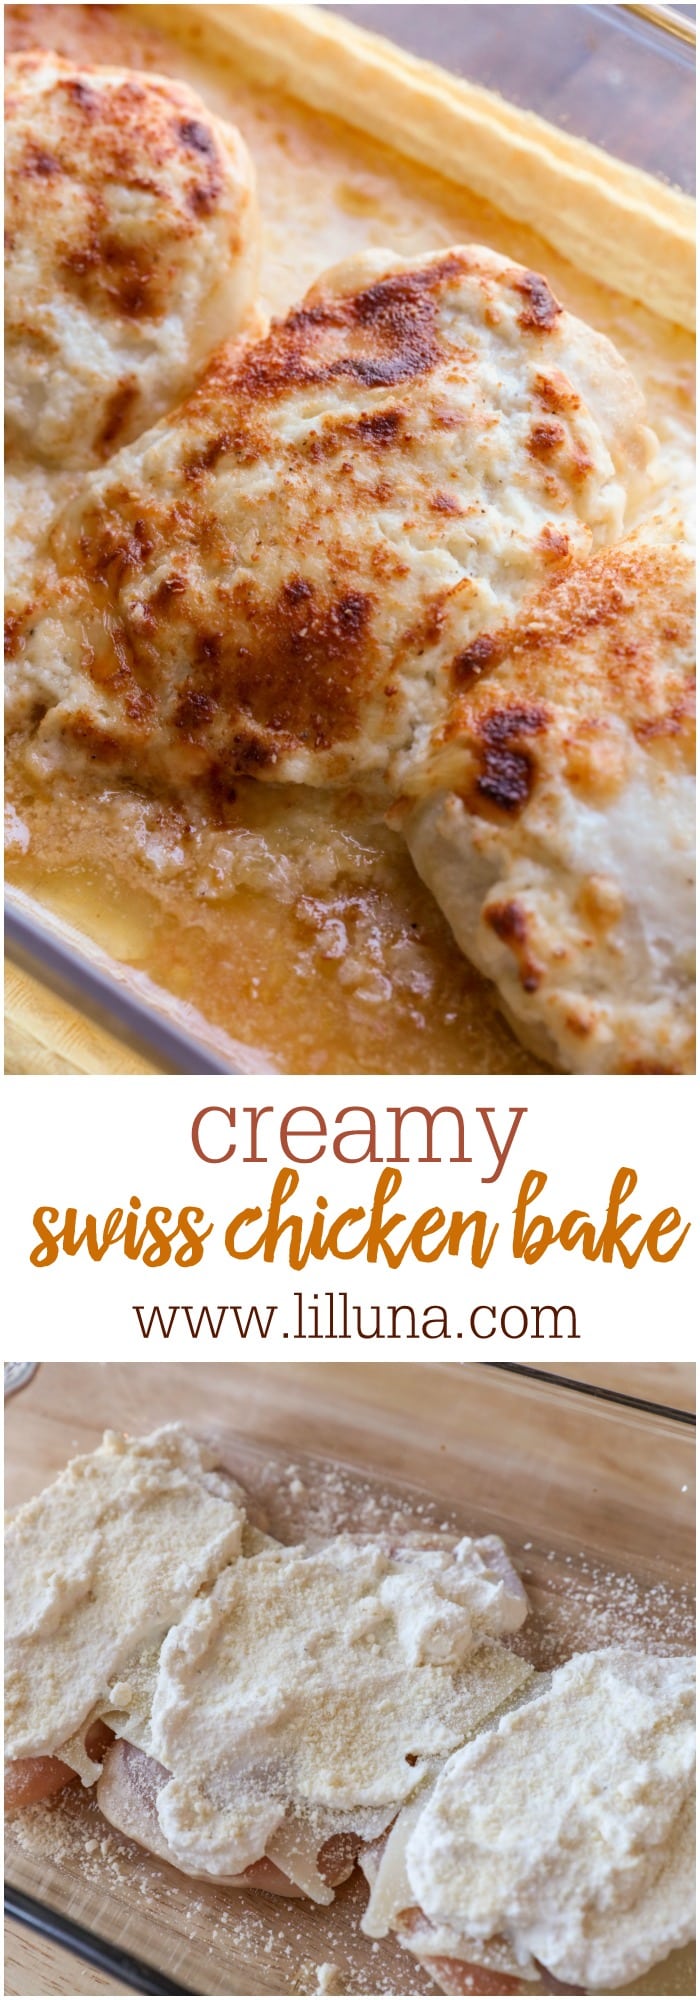 DELICIOUS Creamy Swiss Chicken Bake | Lil' Luna